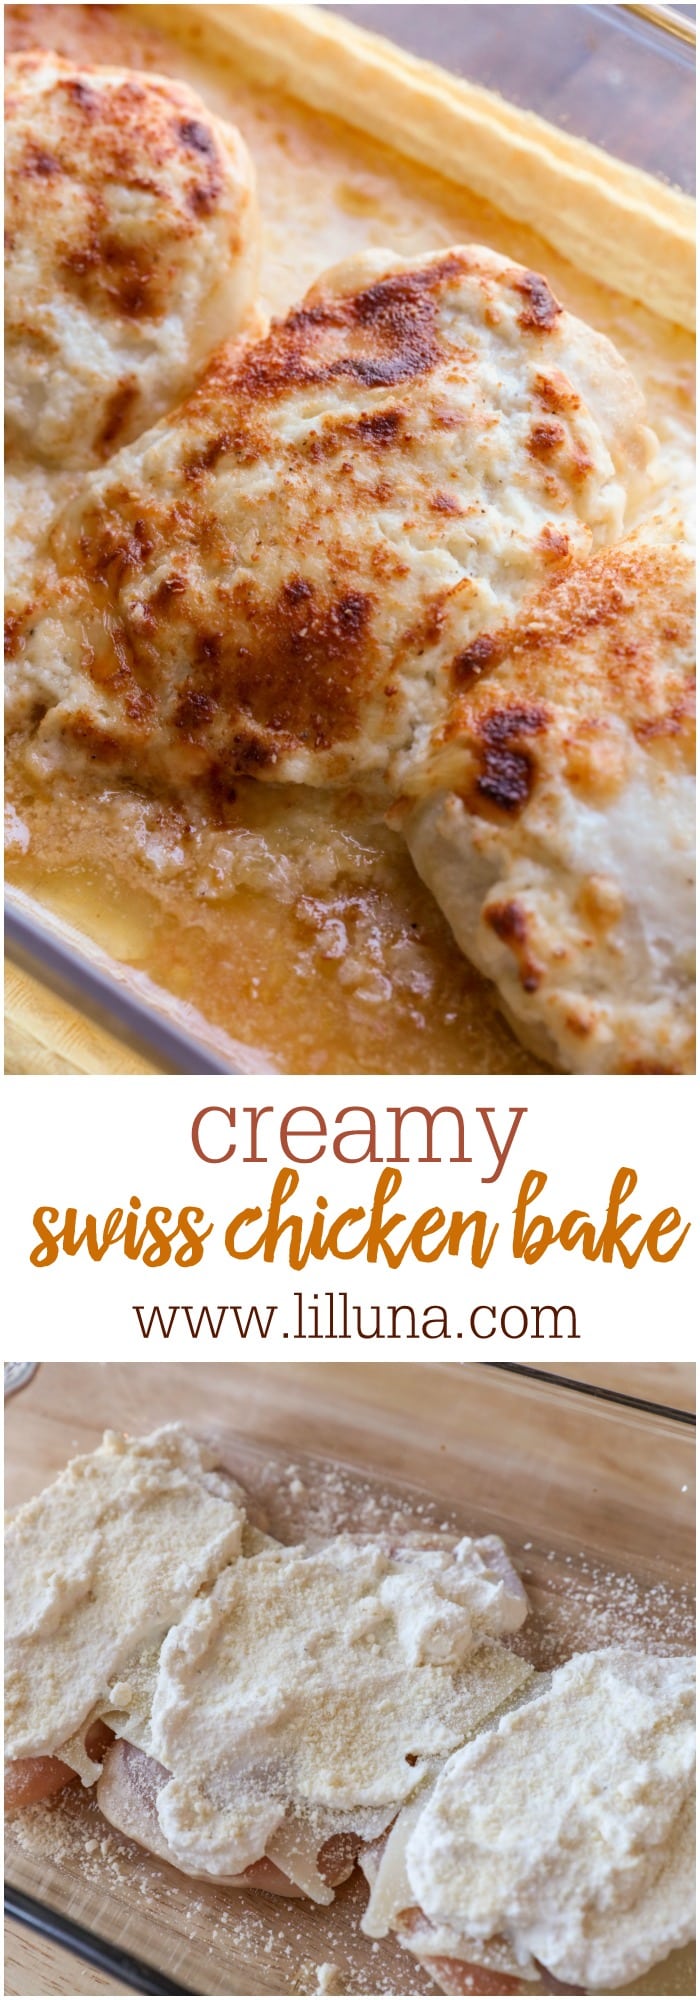 DELICIOUS Creamy Swiss Chicken Bake | Lil' Luna